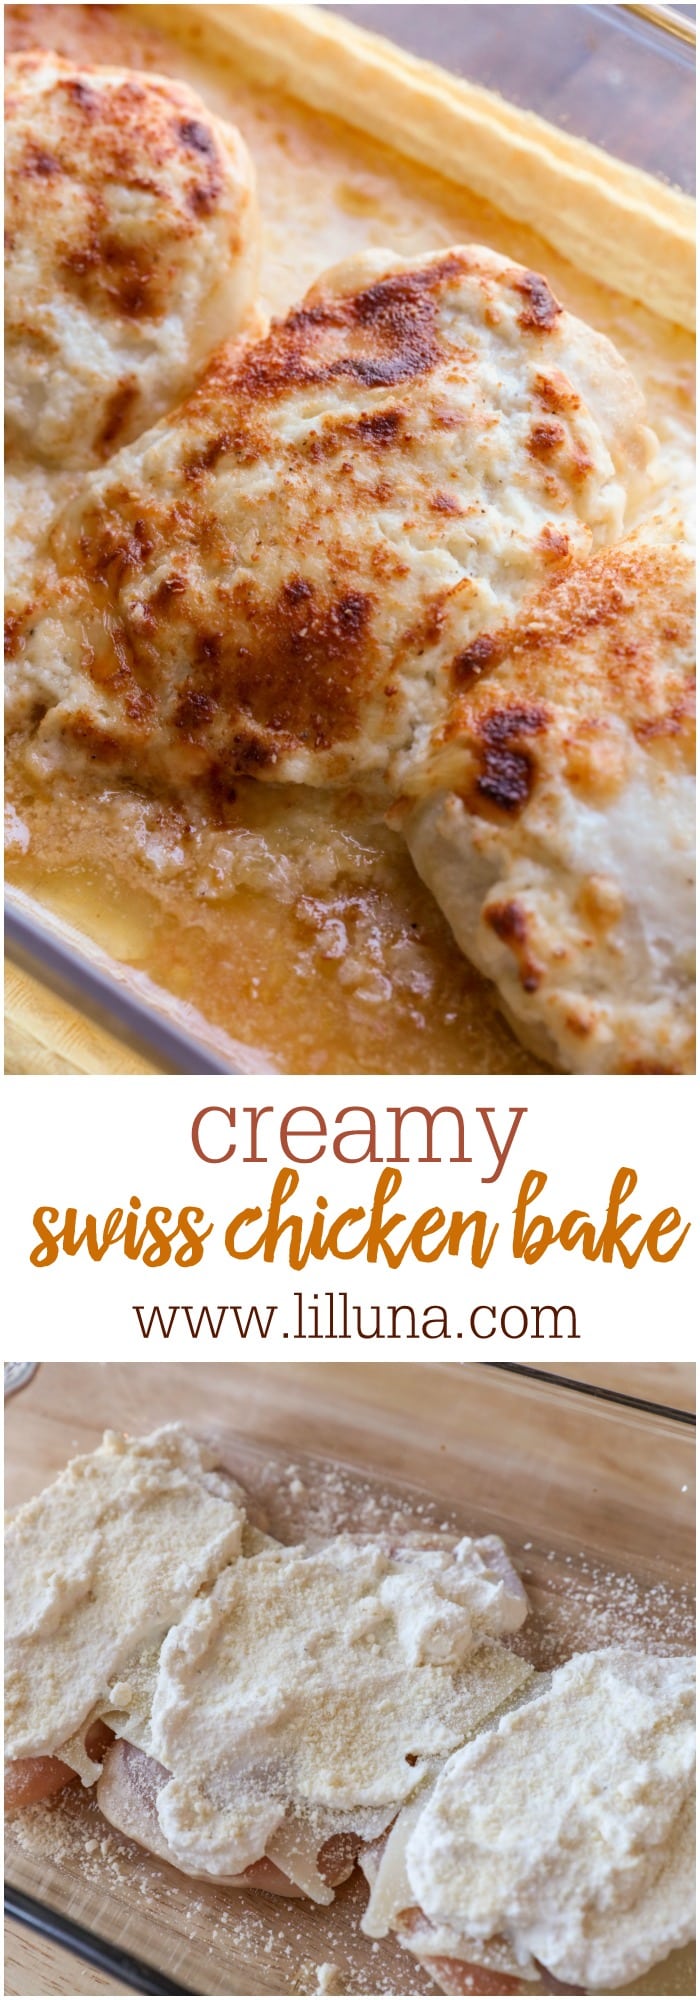 DELICIOUS Creamy Swiss Chicken Bake | Lil' Luna